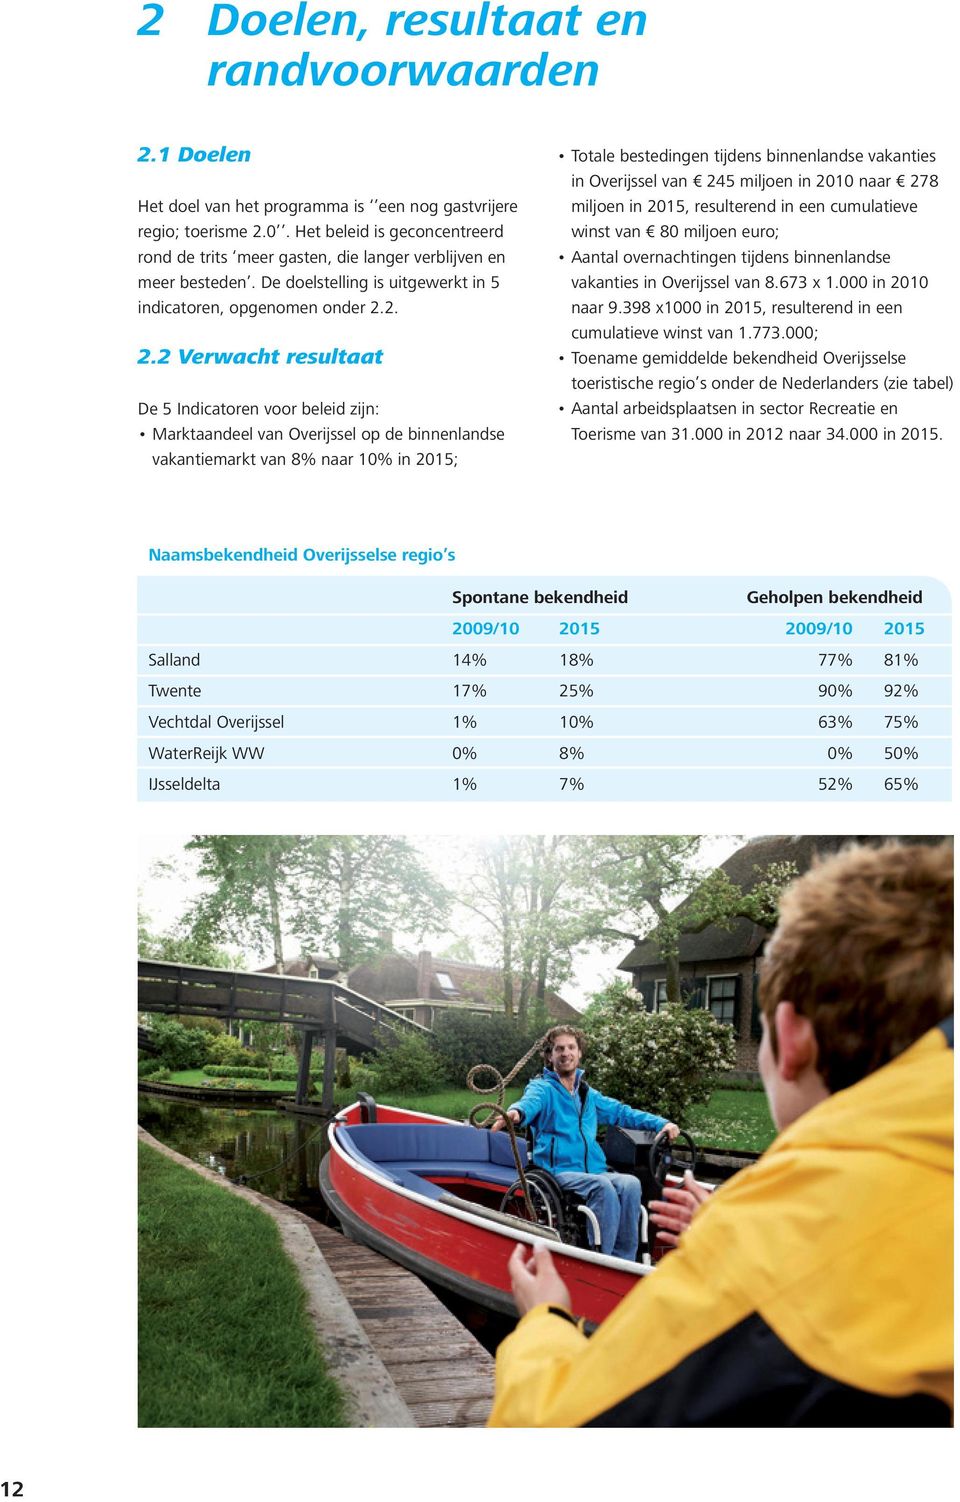 2. 2.2 Verwacht resultaat De 5 Indicatoren voor beleid zijn: Marktaandeel van Overijssel op de binnenlandse vakantiemarkt van 8% naar 10% in 2015; Totale bestedingen tijdens binnenlandse vakanties in